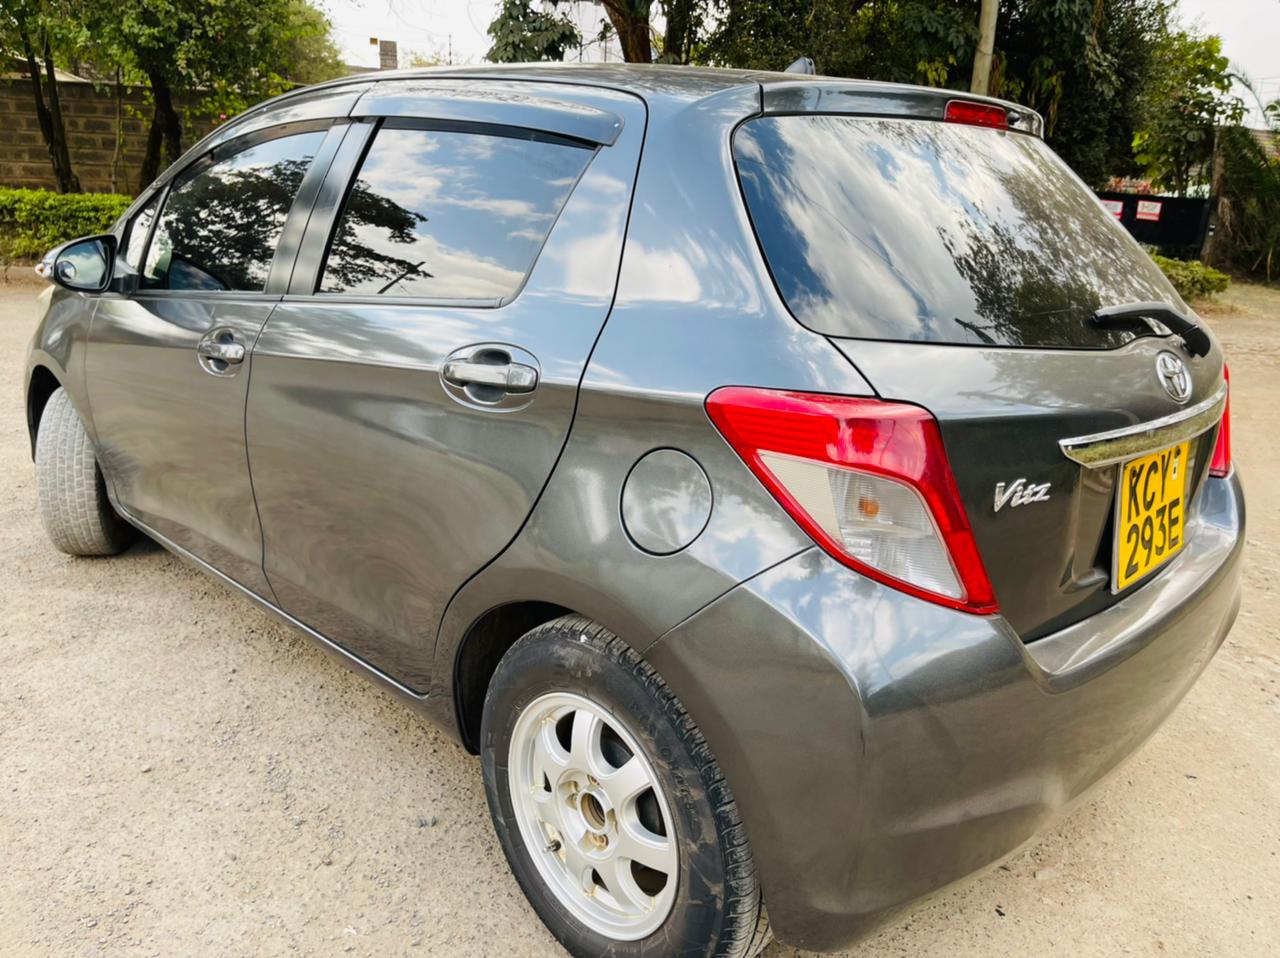 Toyota Vitz 2012 Pay 20% deposit 80% in 60 Months